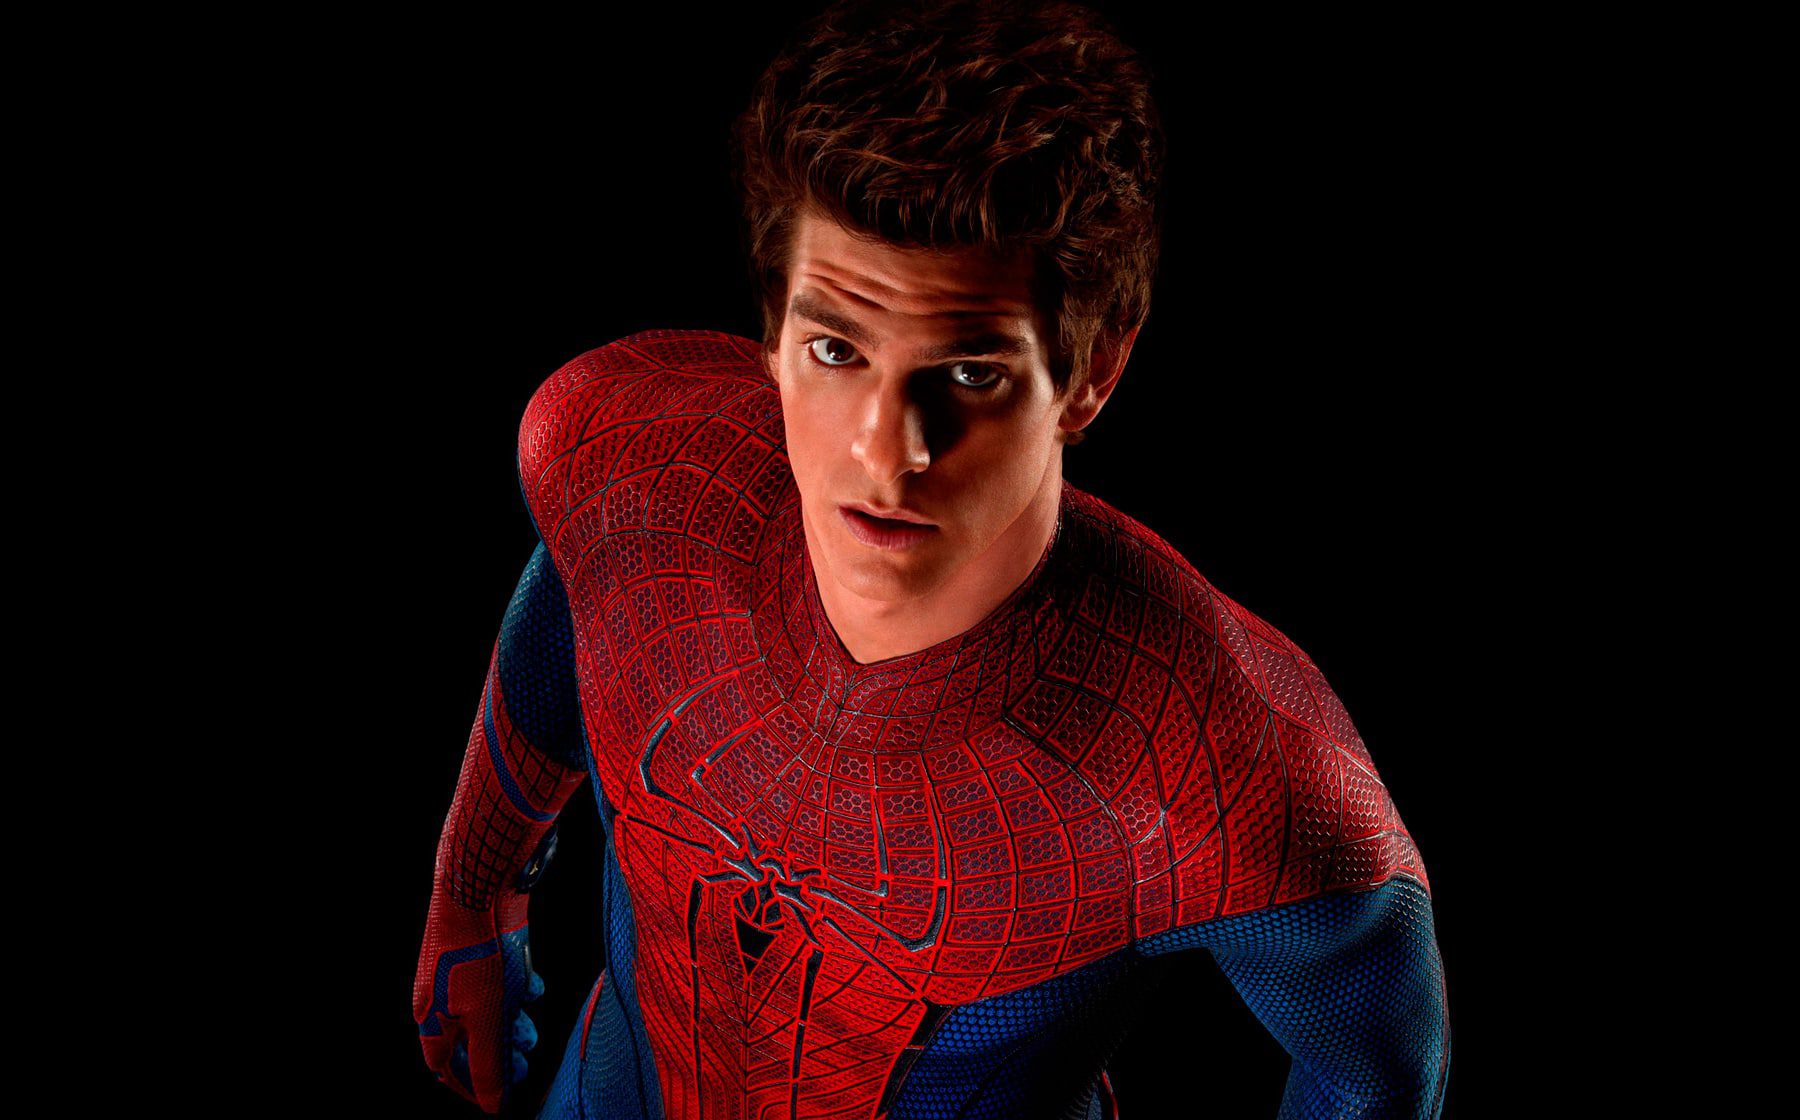 i migliori film di Spider-Man: la classifica